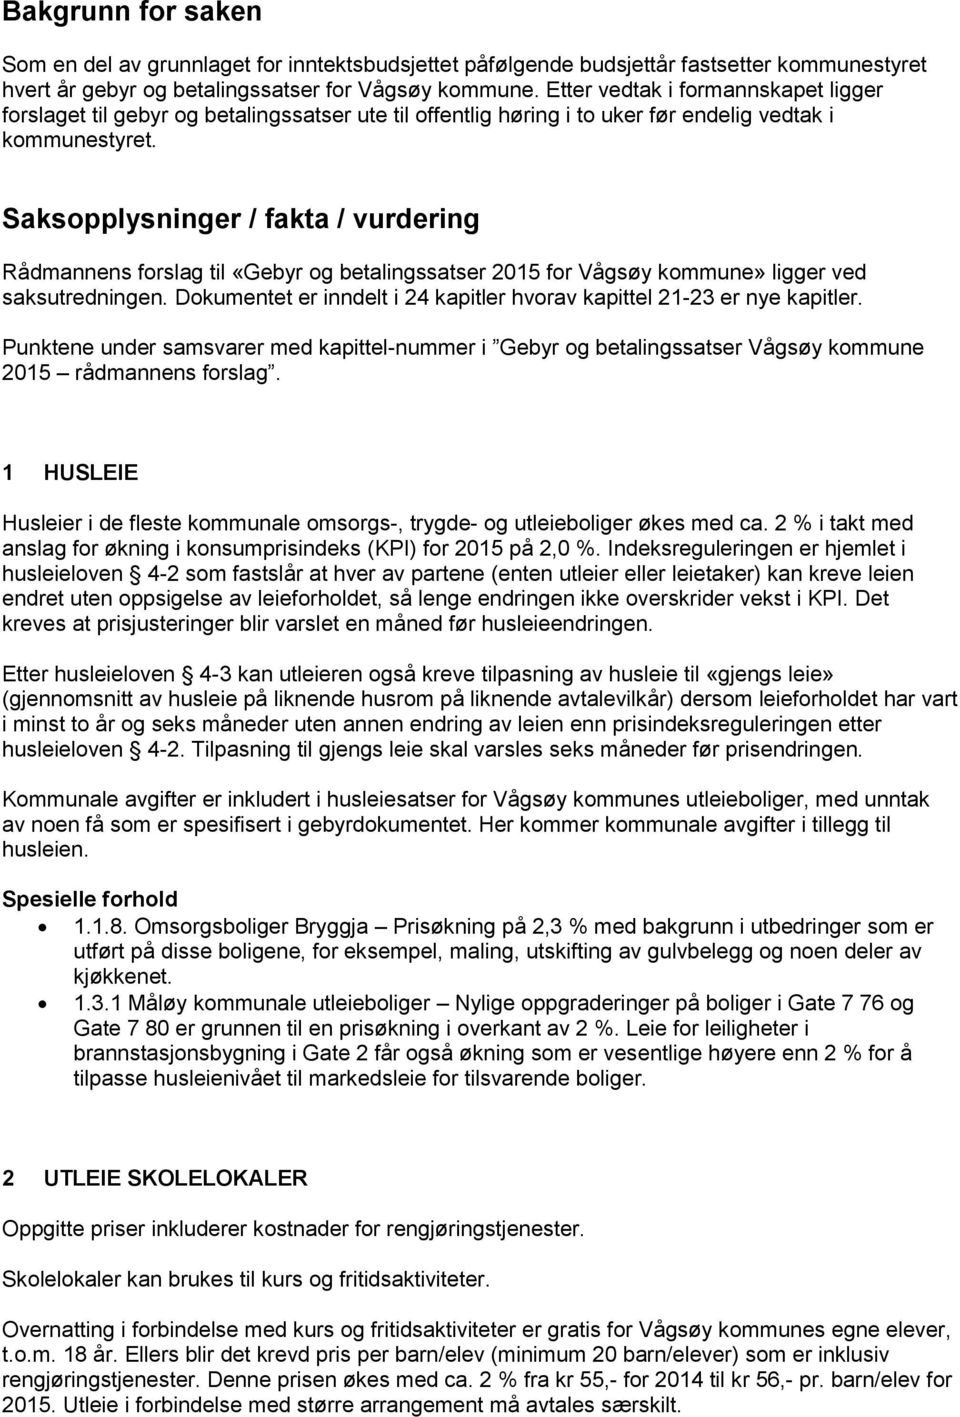 Saksopplysninger / fakta / vurdering til «Gebyr og betalingssatser 2015 for Vågsøy kommune» ligger ved saksutredningen. Dokumentet er inndelt i 24 kapitler hvorav kapittel 21-23 er nye kapitler.